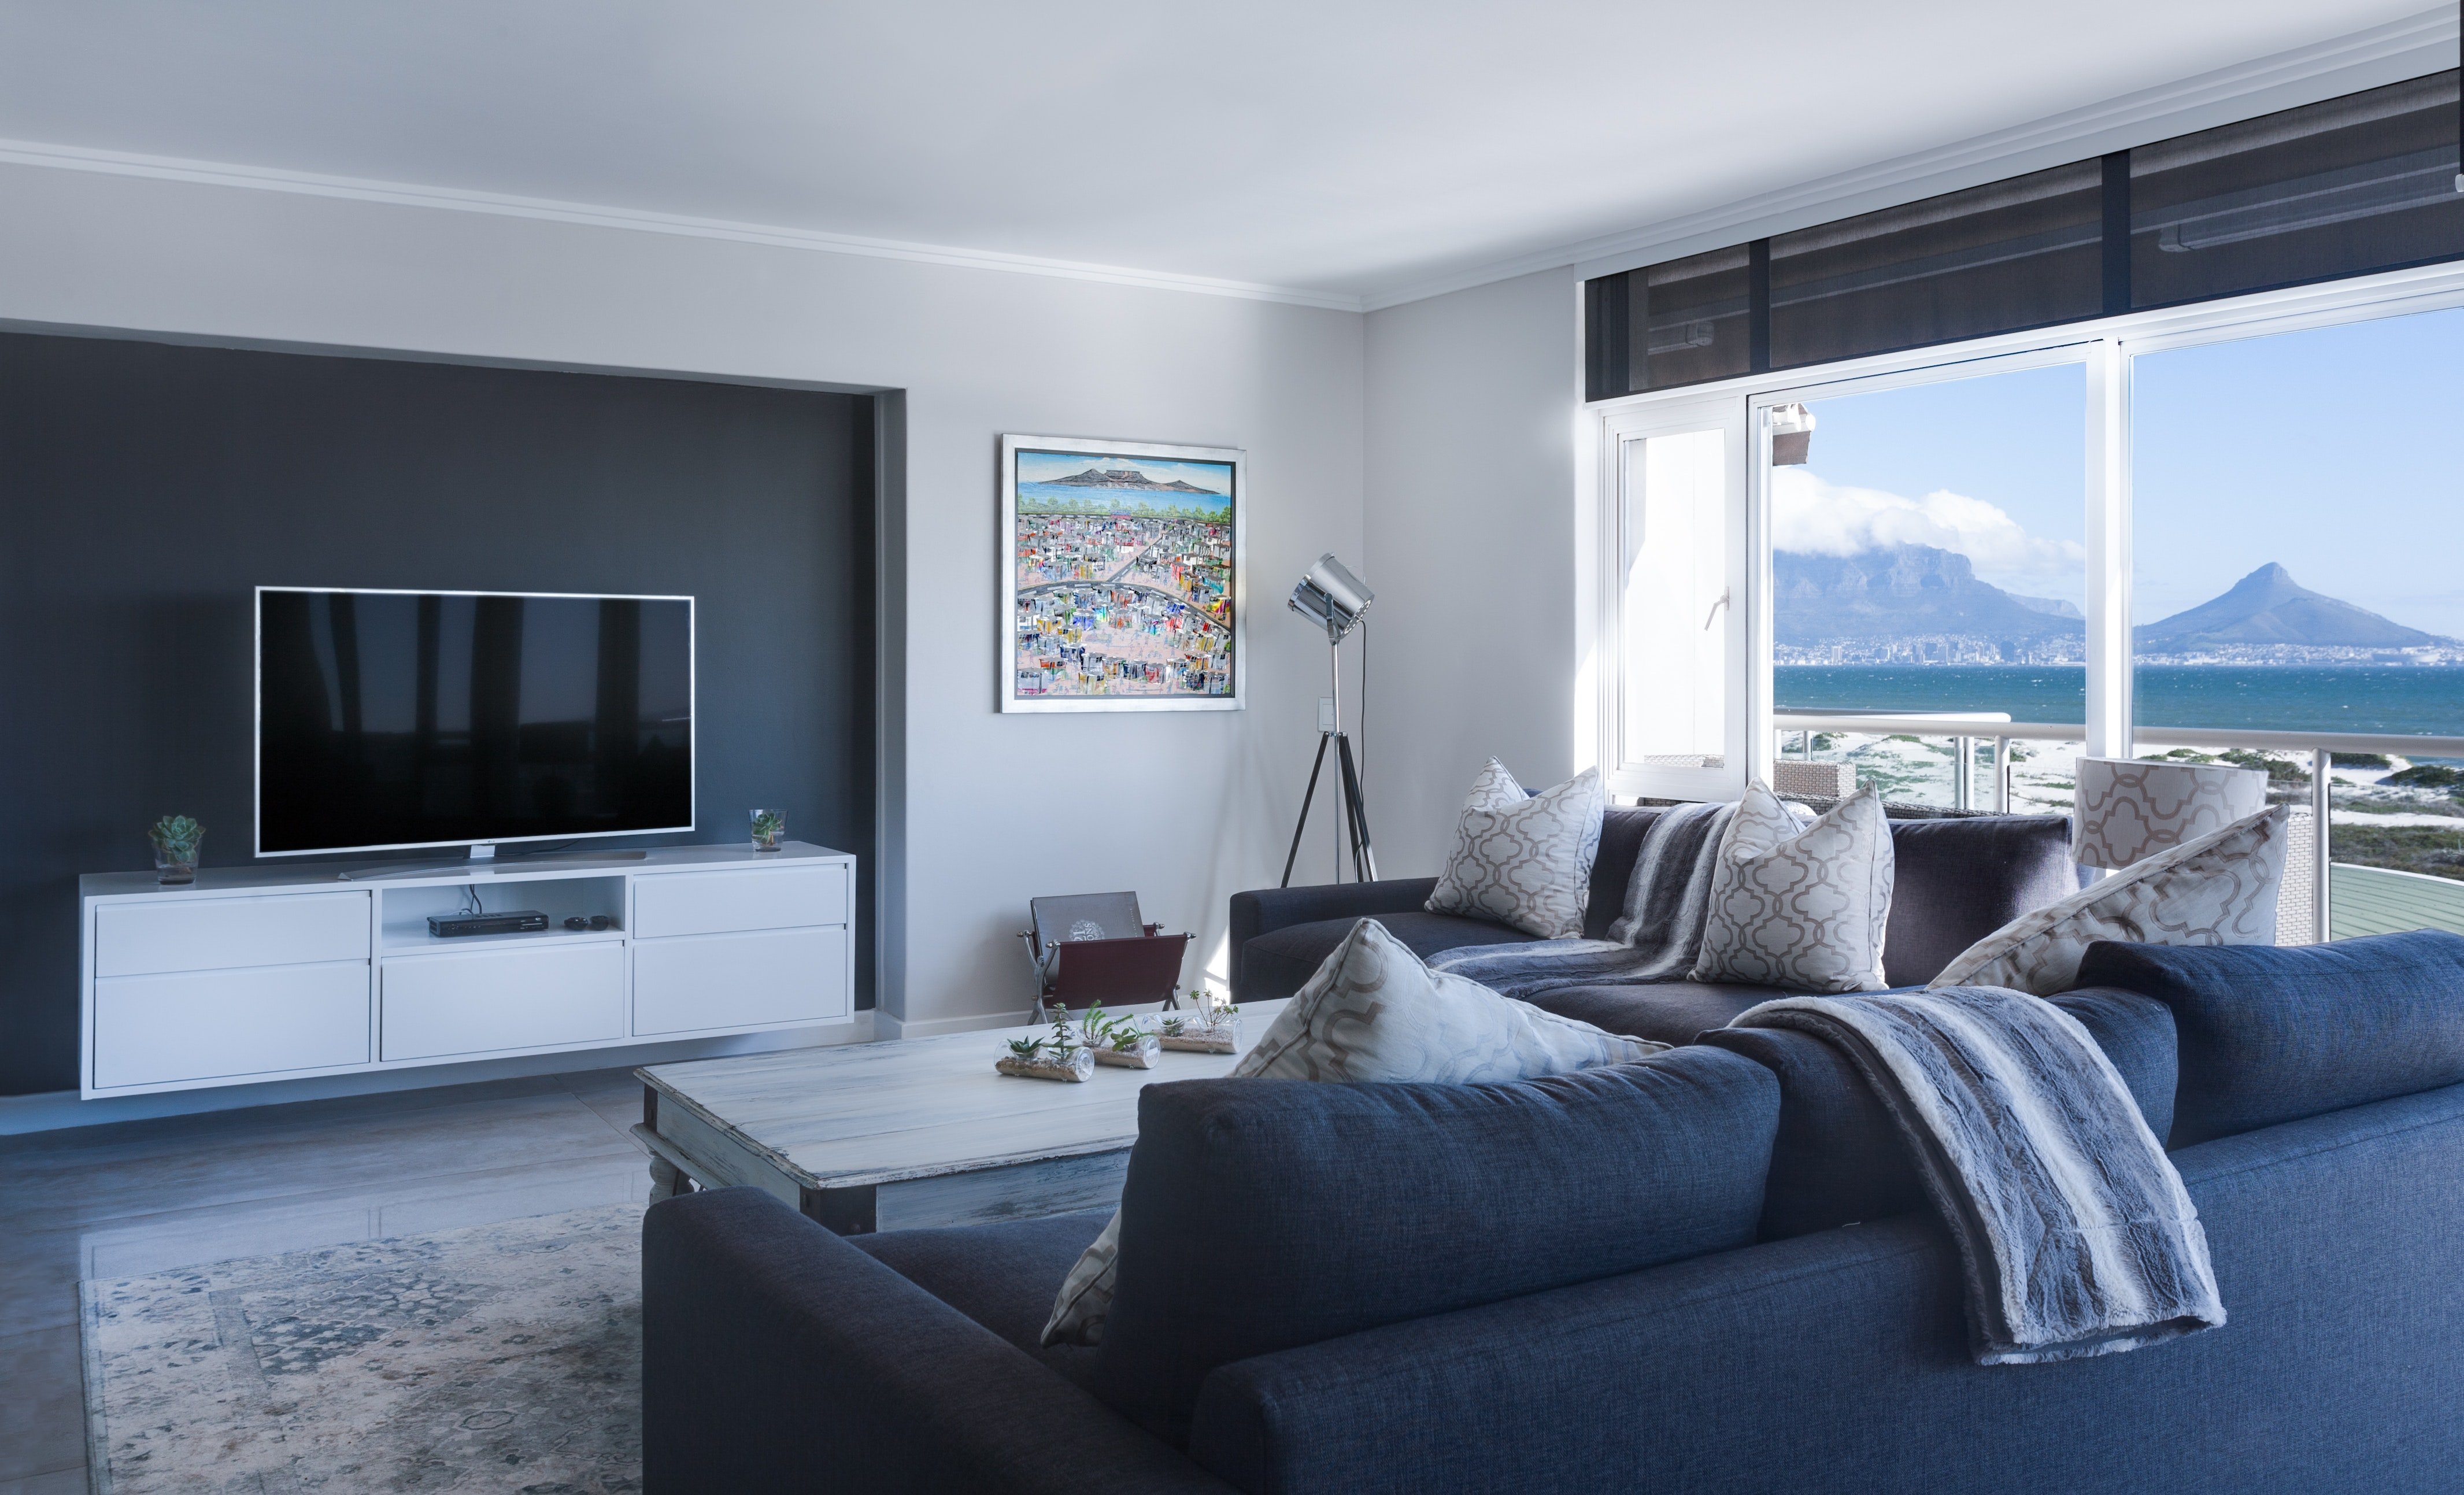 TV stand membuat tampilan ruang keluarga menjadi lebih tertata (Photo by Jean van der Meulen from Pexels)